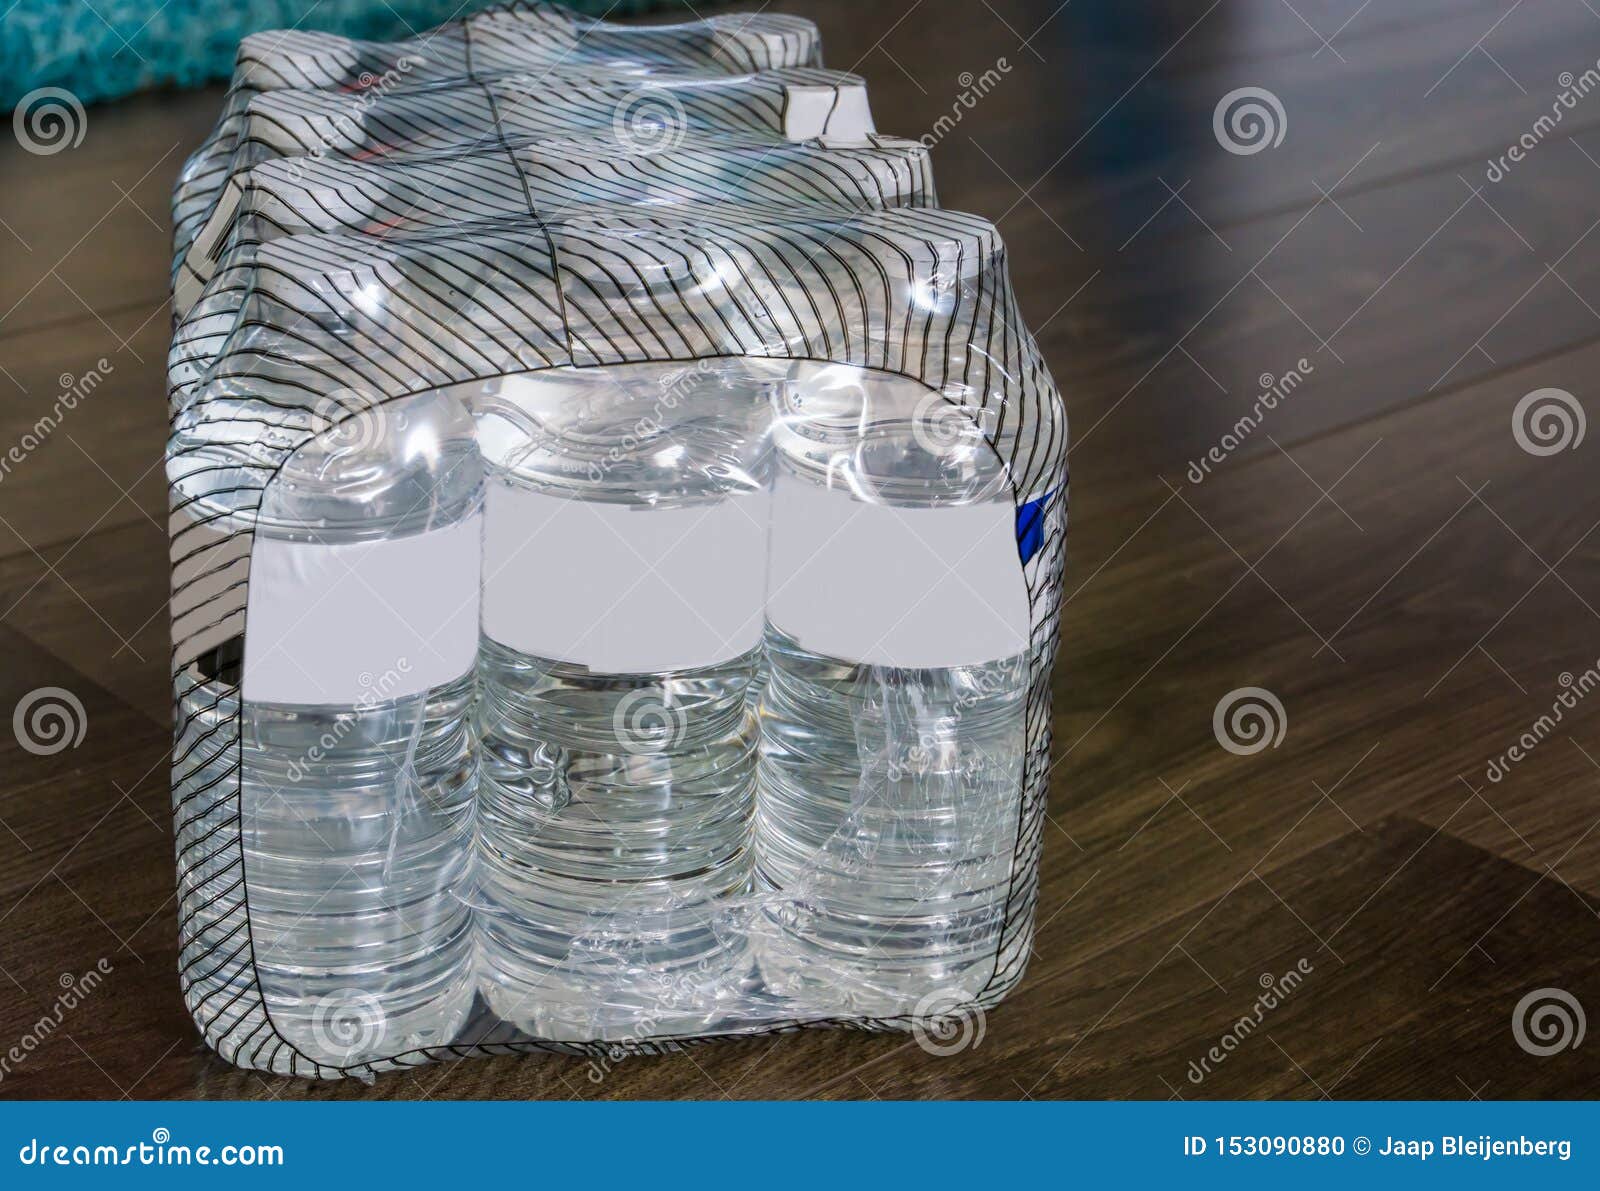 costo Separación Ficticio 12 Paquetes De Botellas De Agua Minerales, Embalados En La Basura Y El  Ambiente Plásticos, Plásticos, Productos Populares Foto de archivo - Imagen  de fondo, refresco: 153090880